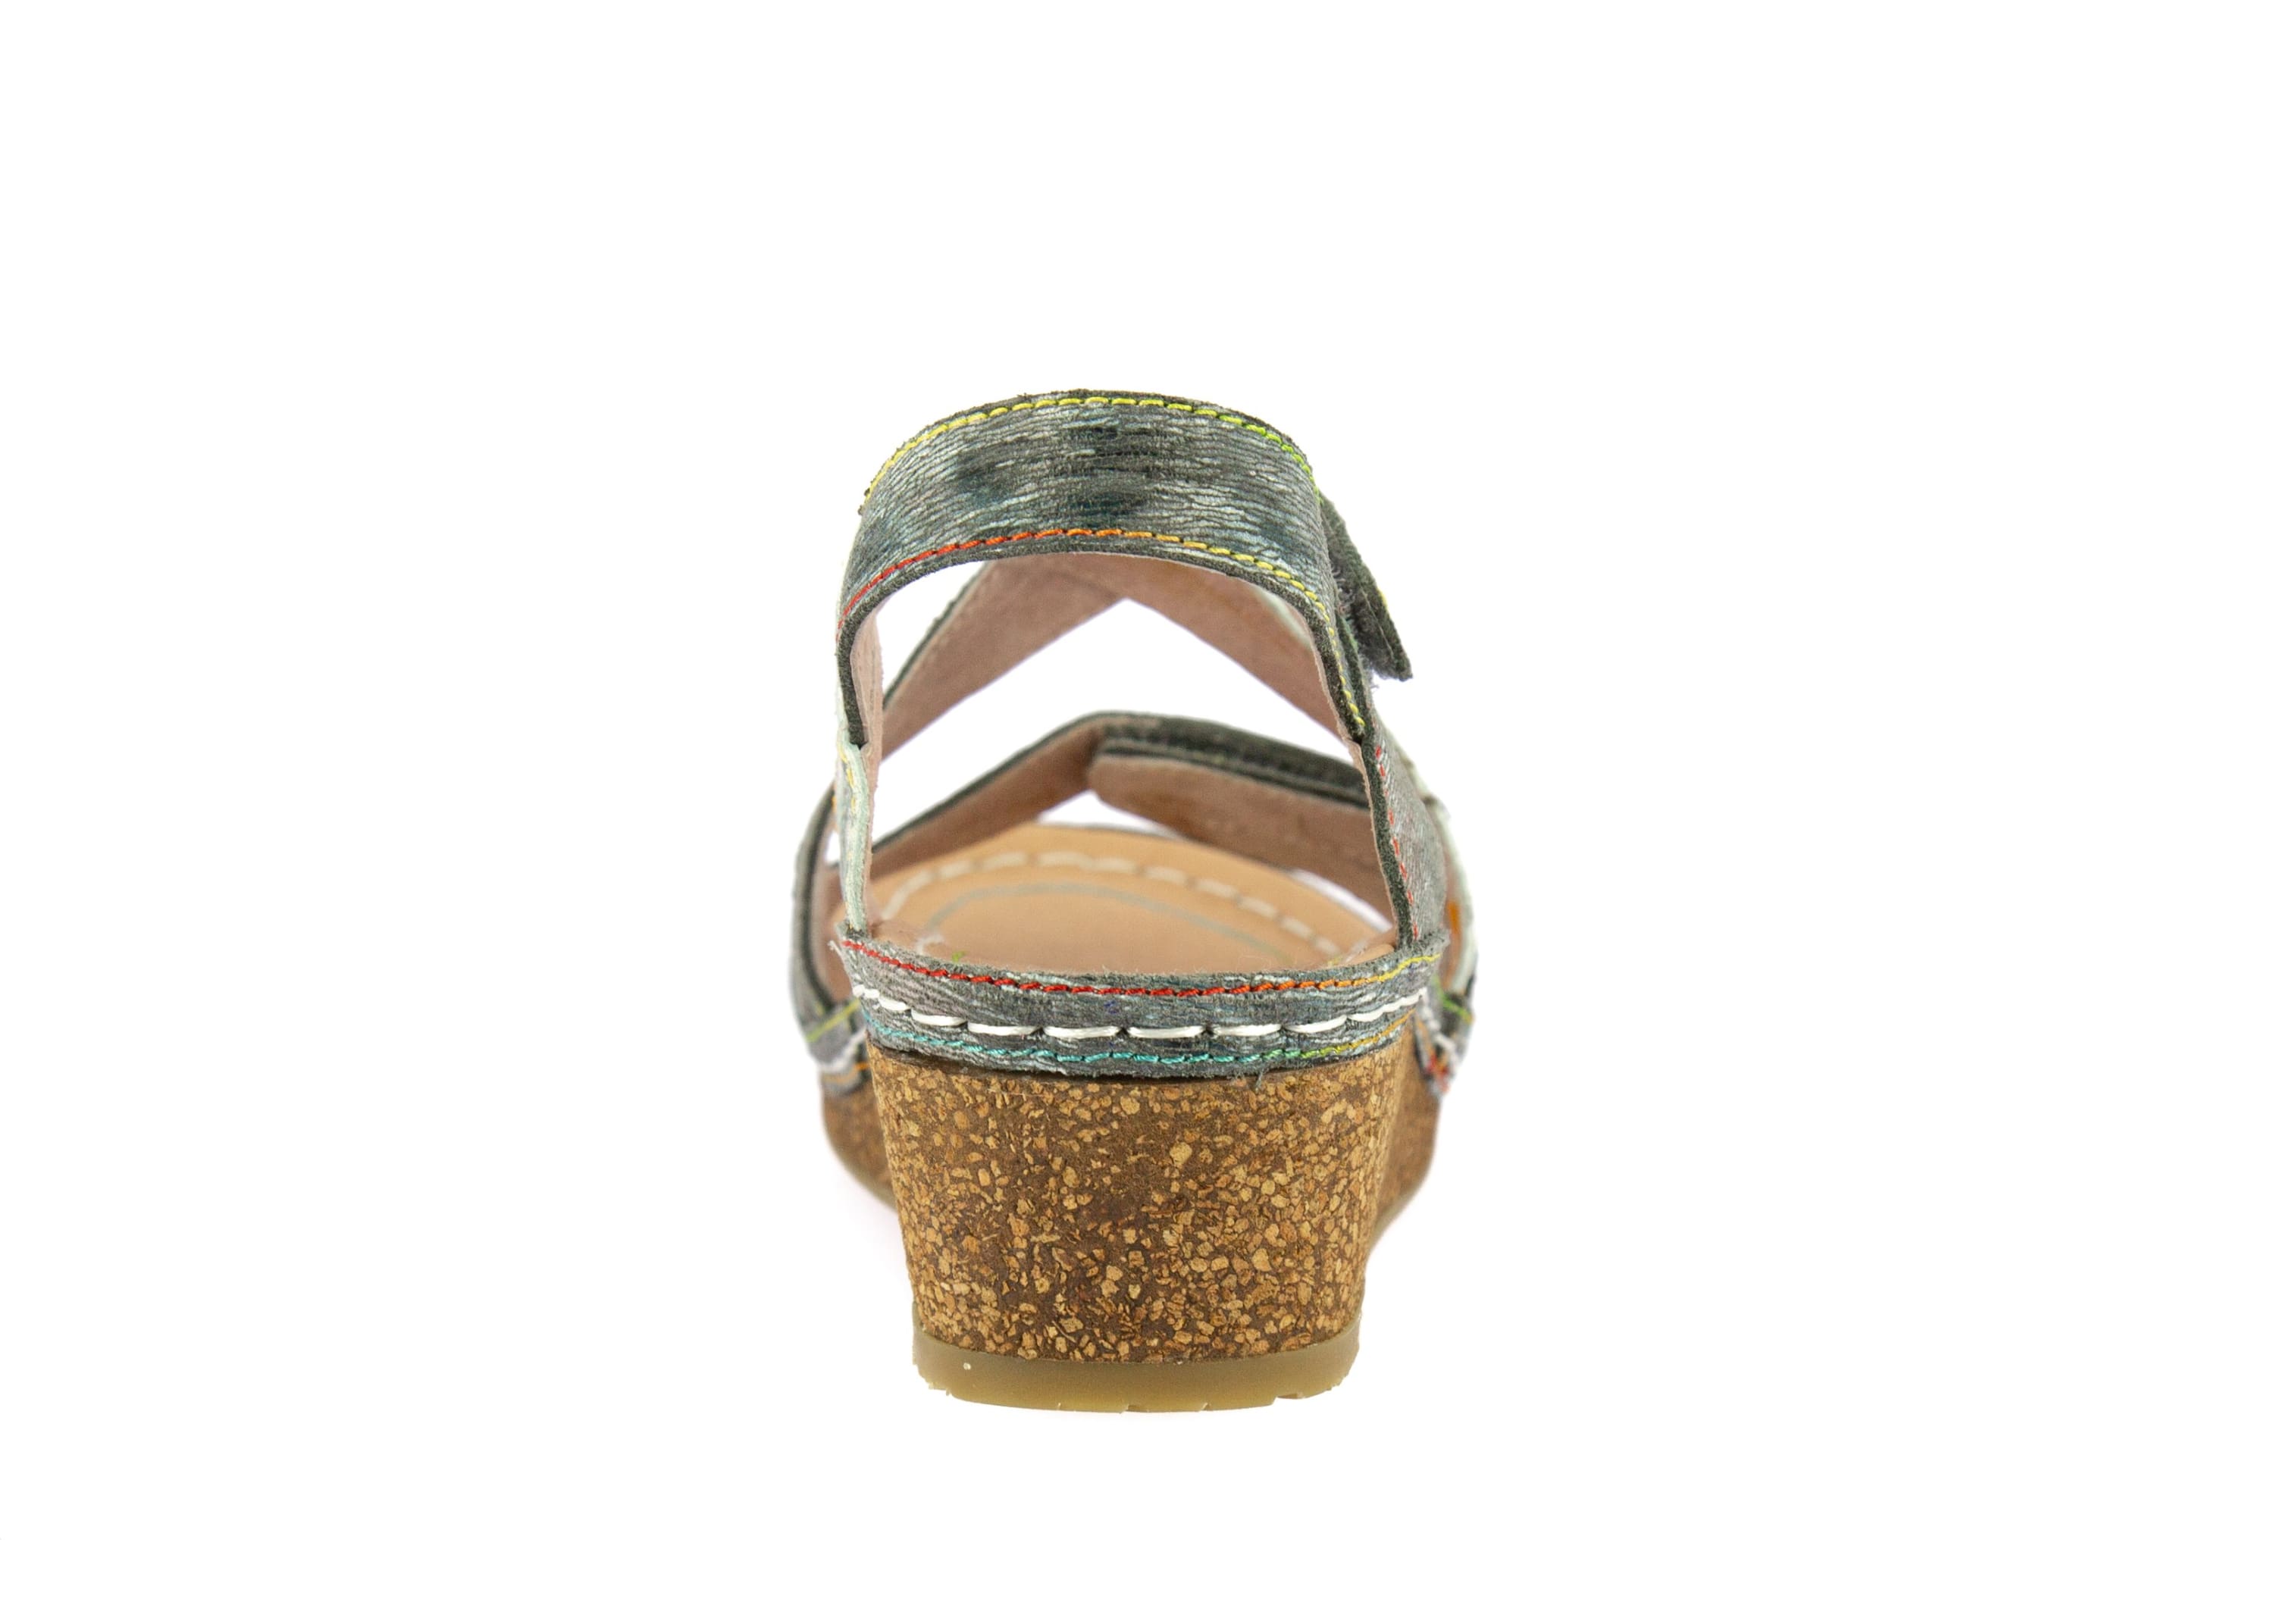 Shoe FACRAHO05 - Sandal